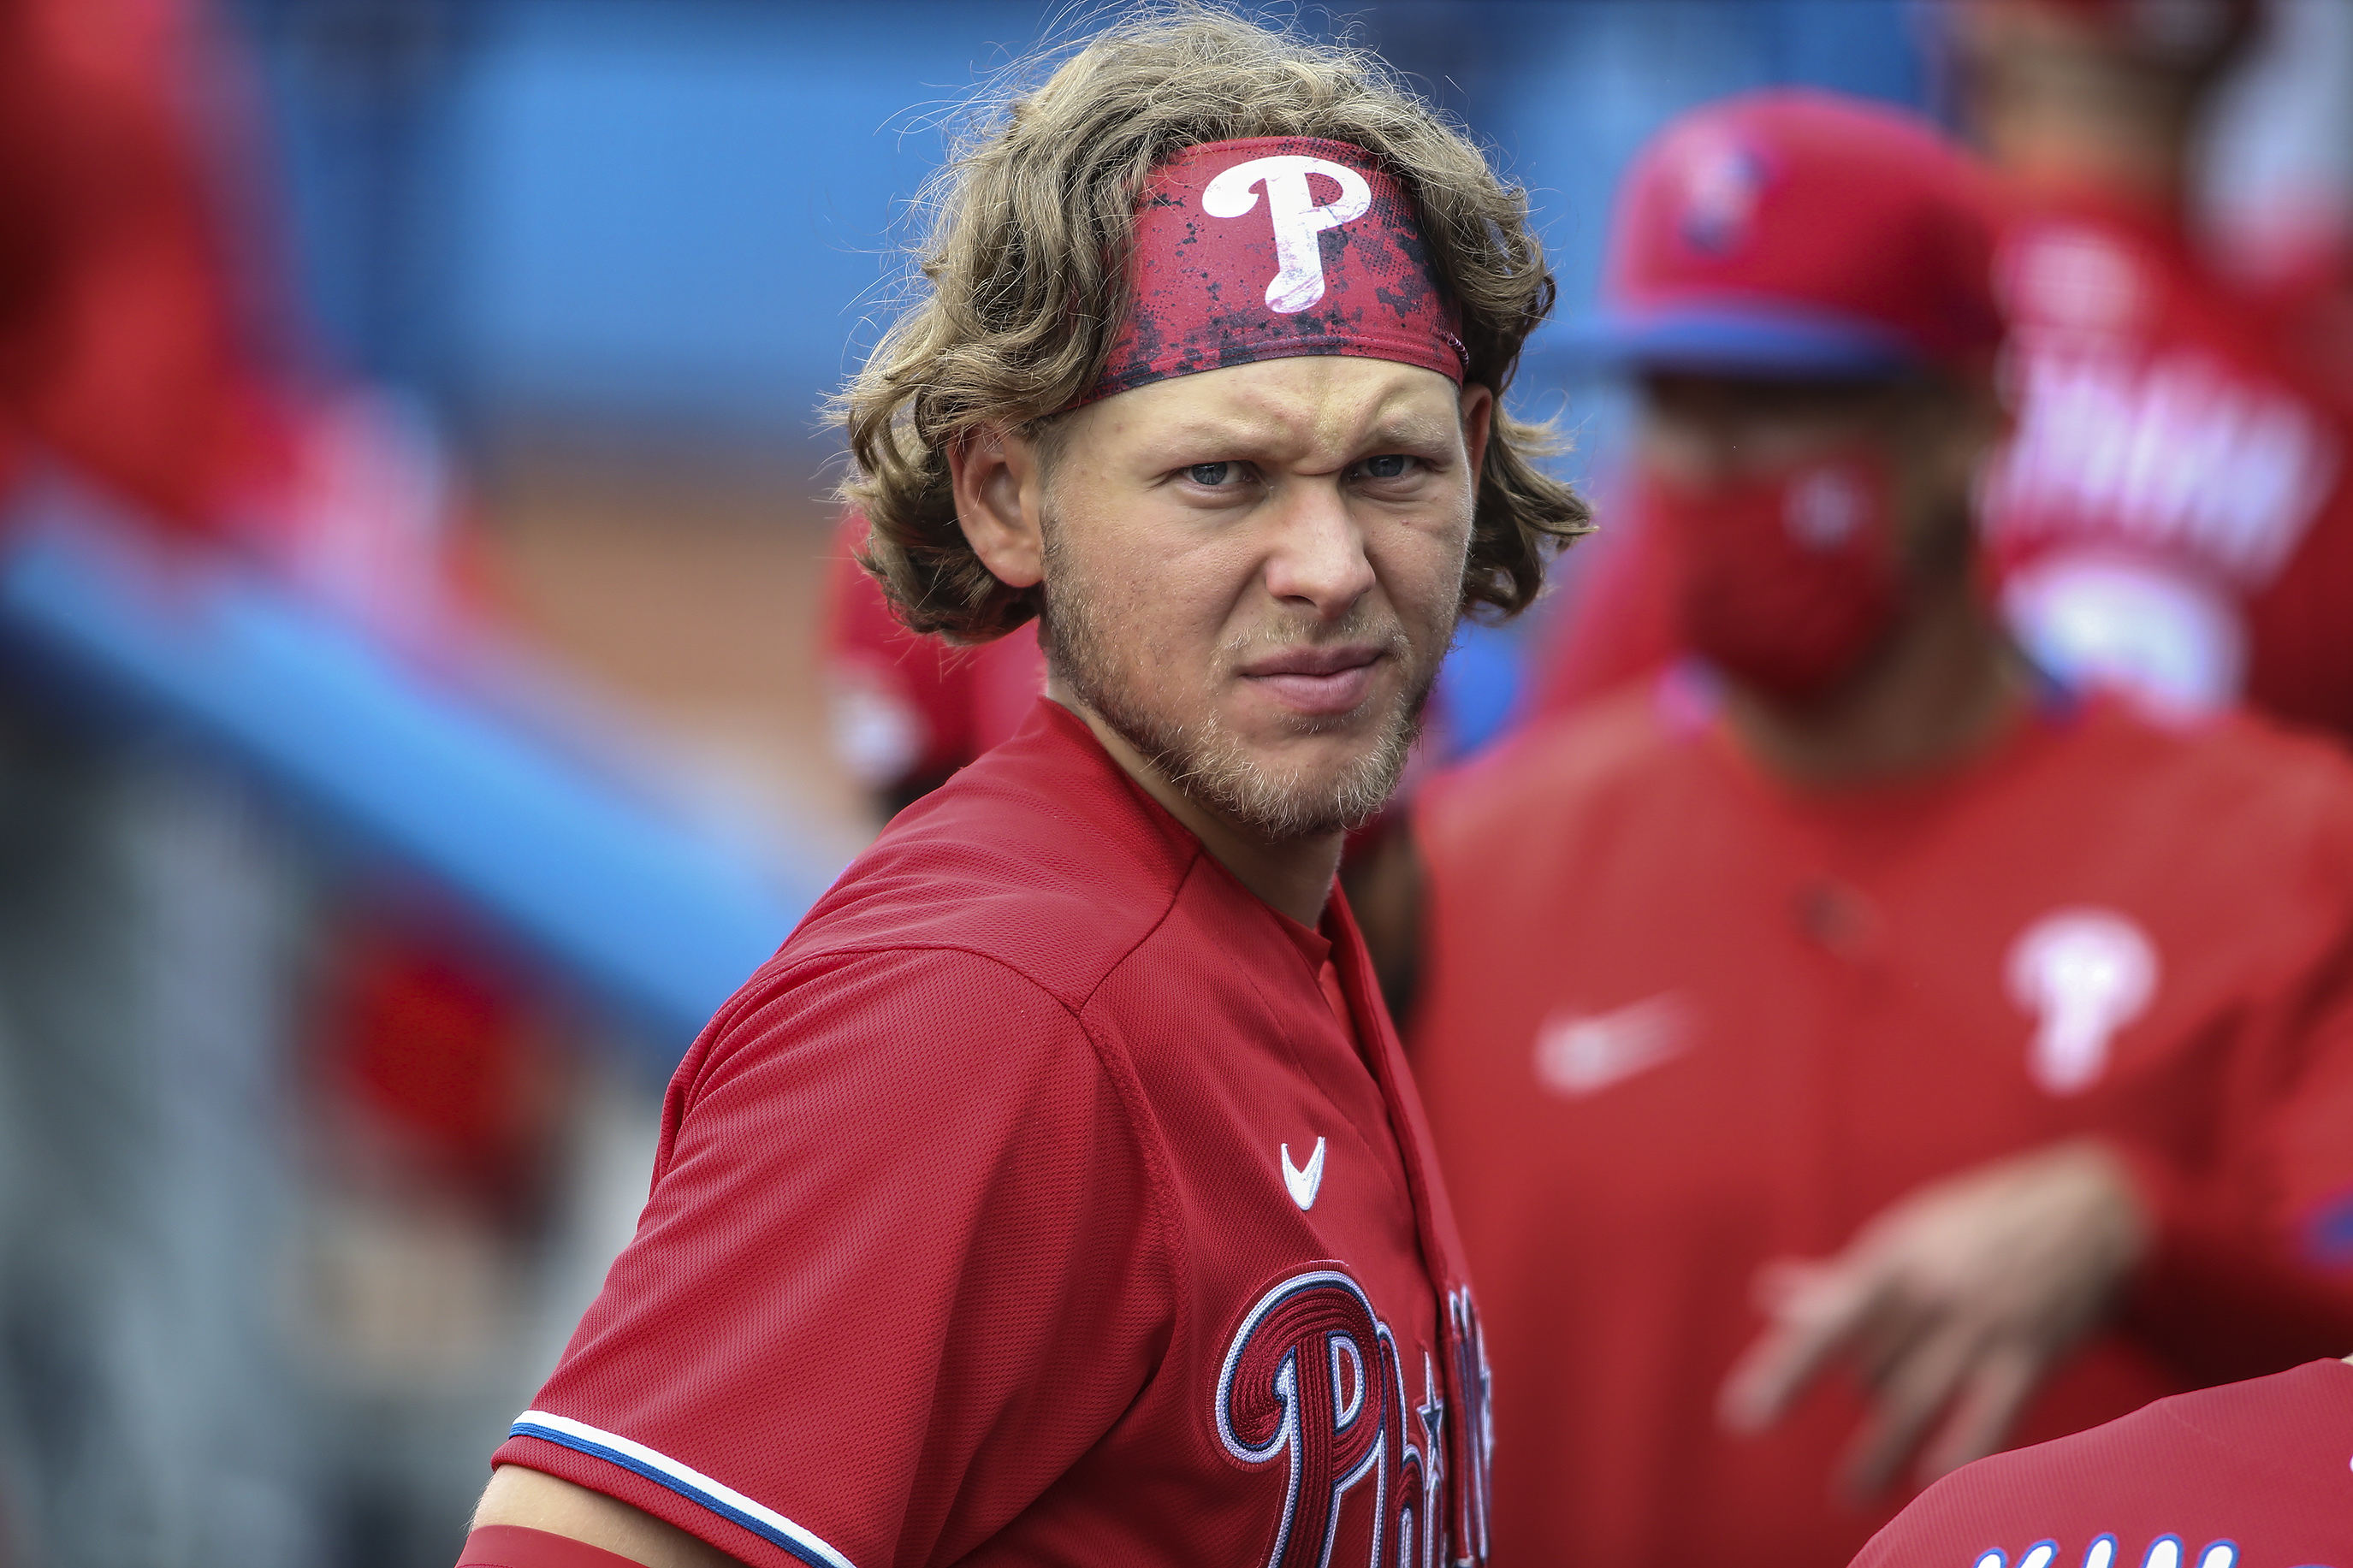 #AlecBohm knows flow (via @MLB) #MLB #baseball #Phillies #hair